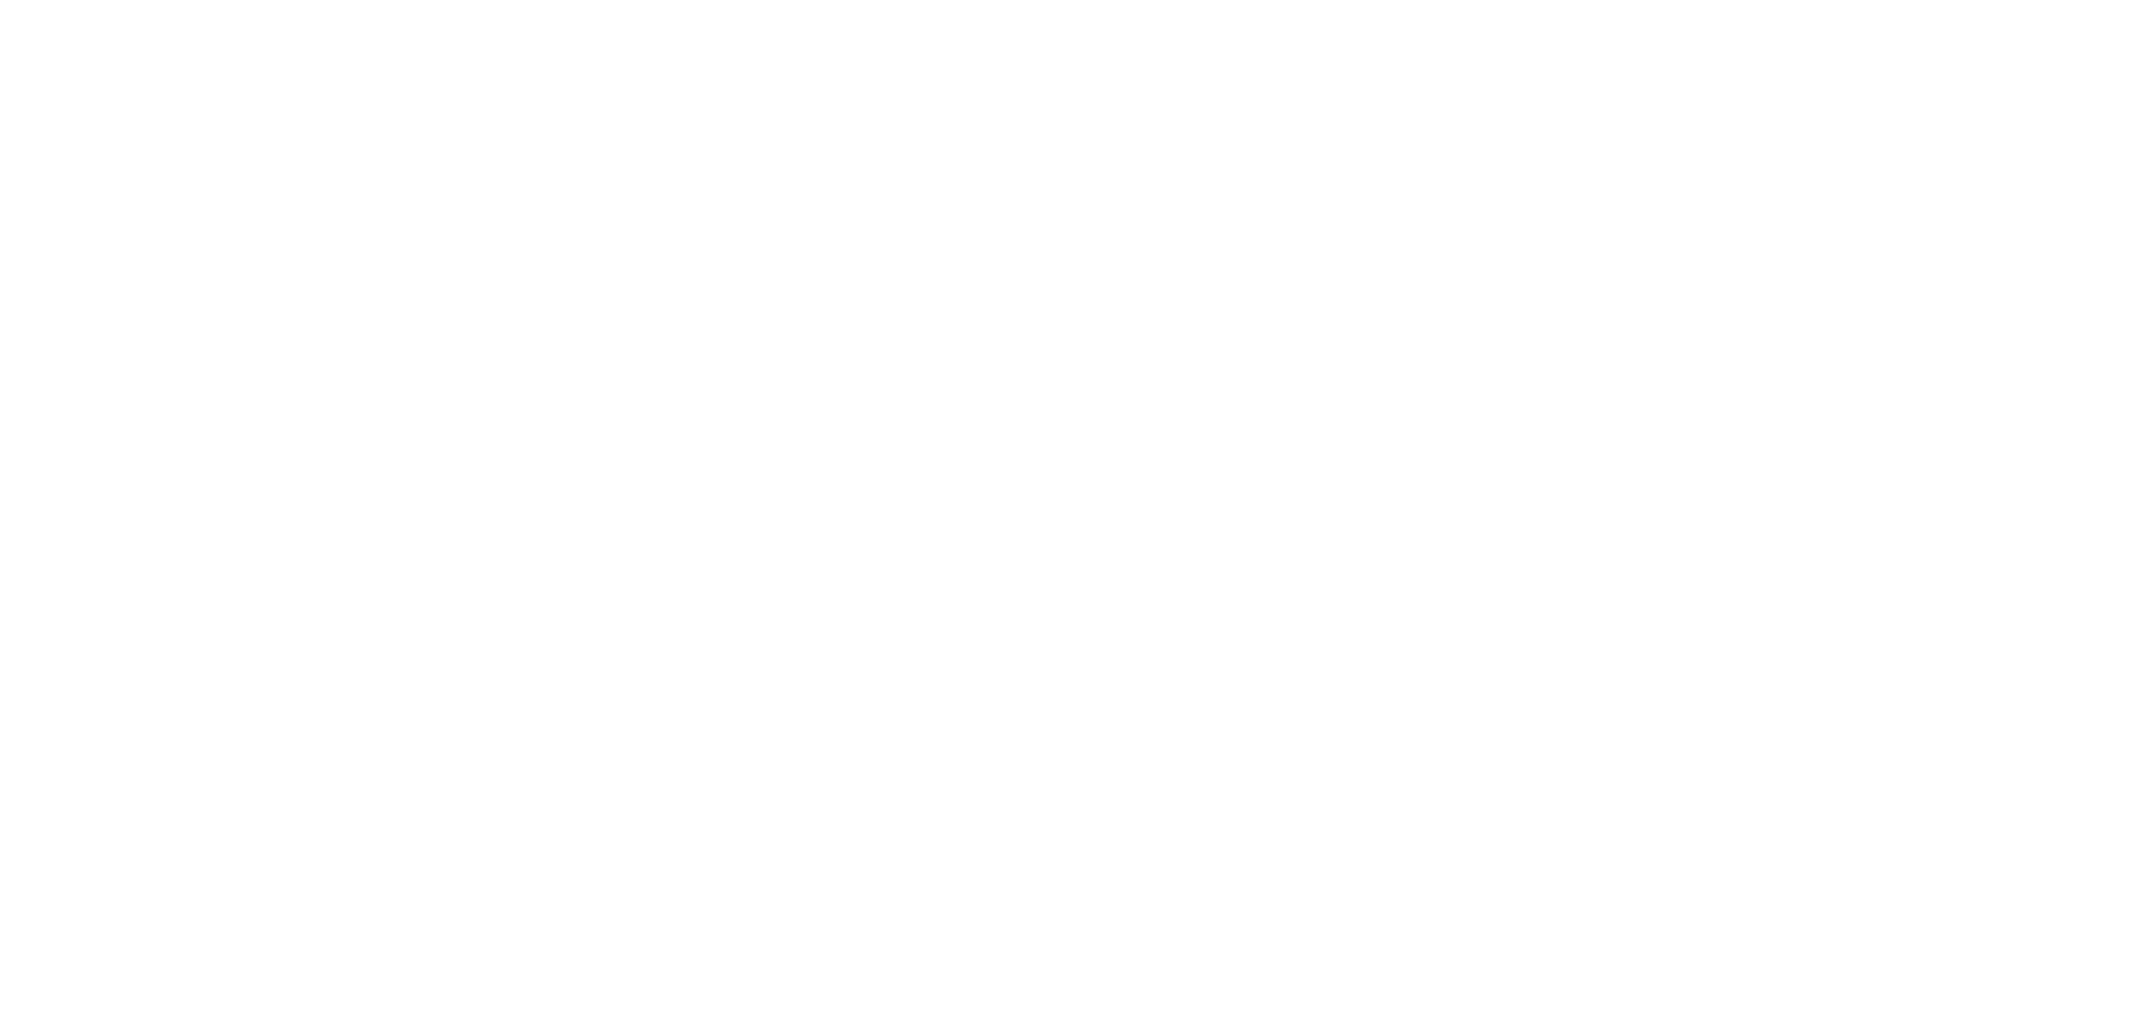 Feuerwehr Schelldorf Biberg Krut